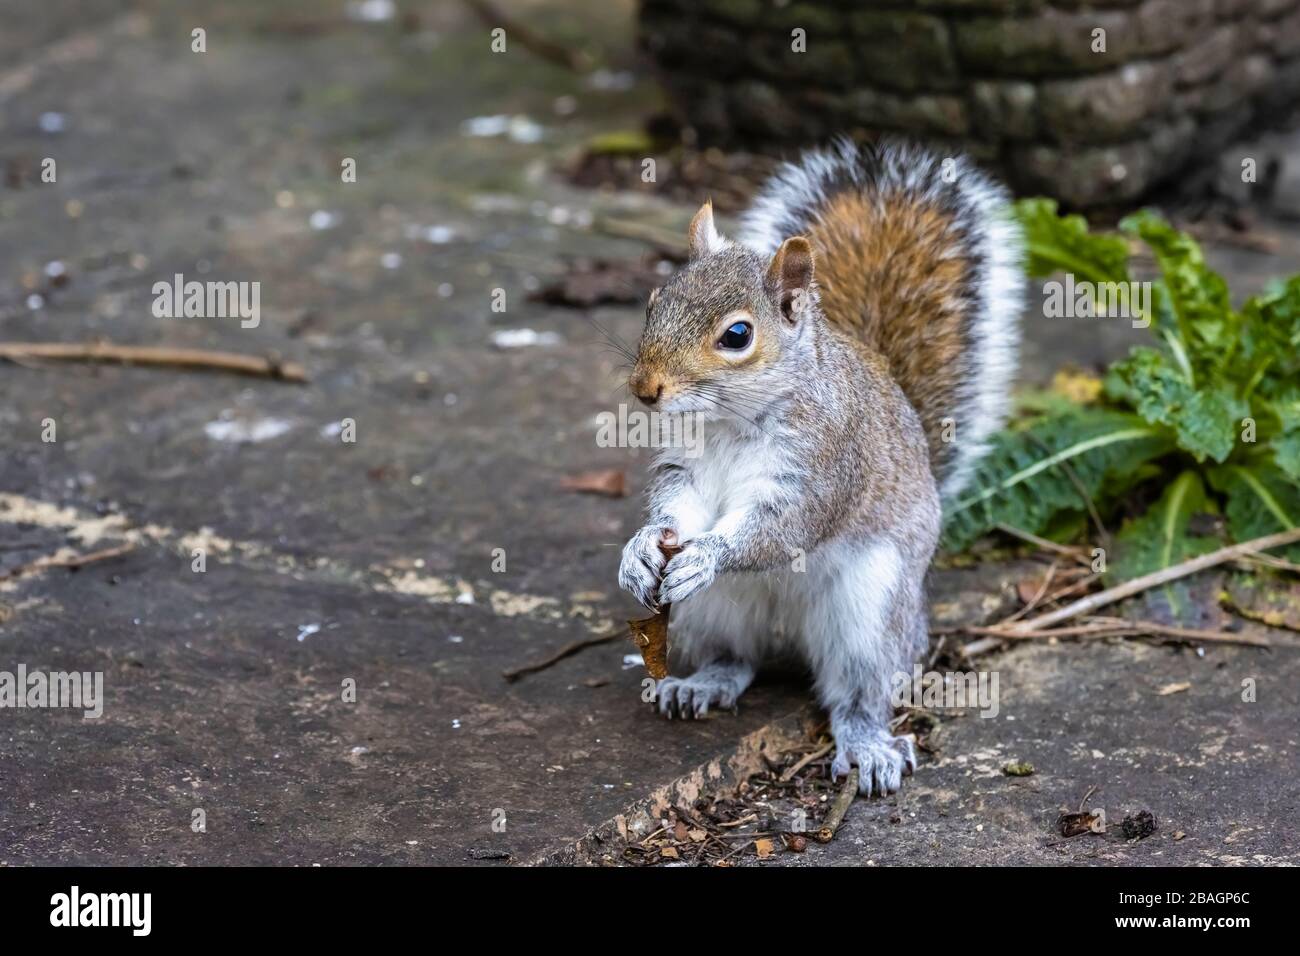 Scoiattolo grigio (scoiattolo grigio americano, Sciurus carolinensis) in piedi su un patio in un giardino in Surrey, Inghilterra sudorientale, mangiare una chiave sycamore Foto Stock